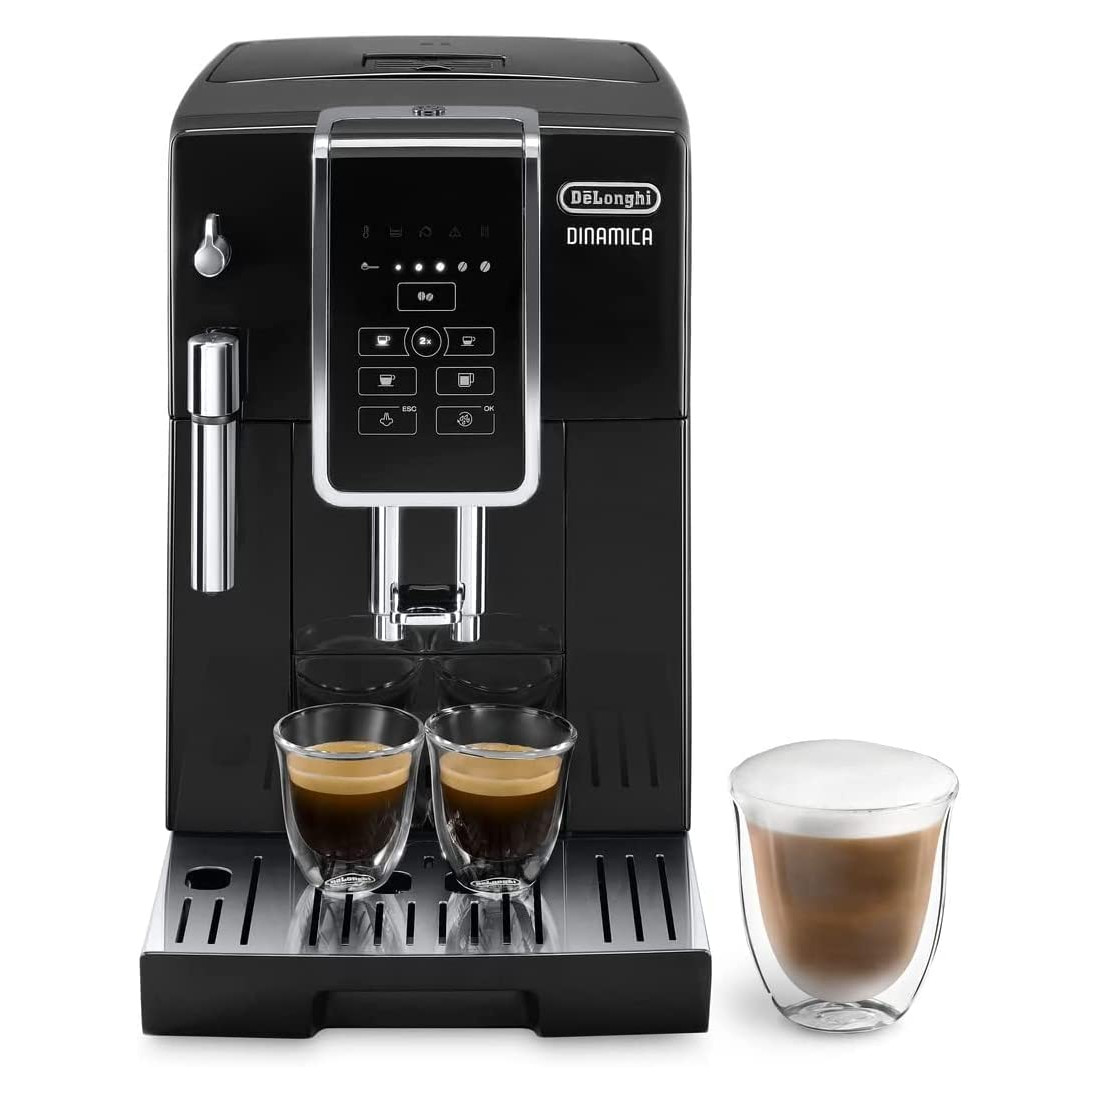 Máy pha cà phê tự động DeLonghi Dinamica ECAM 350.15.B